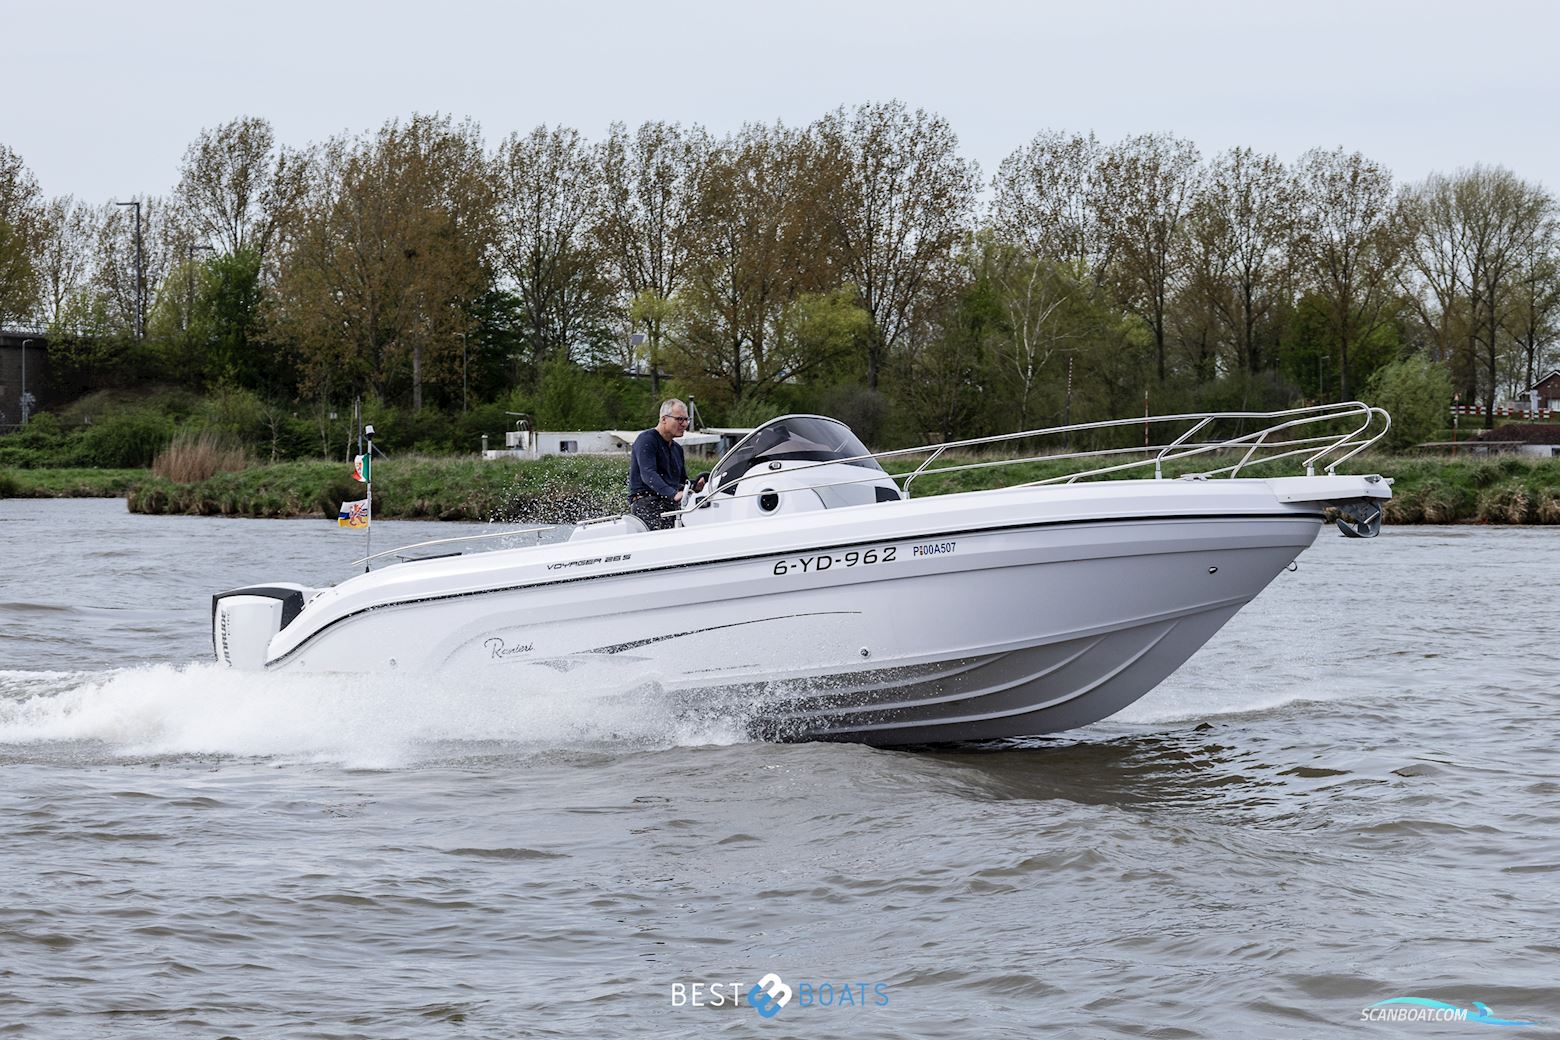 Ranieri Voyager 26S Motorbåd 2020, med Evinrude motor, Holland